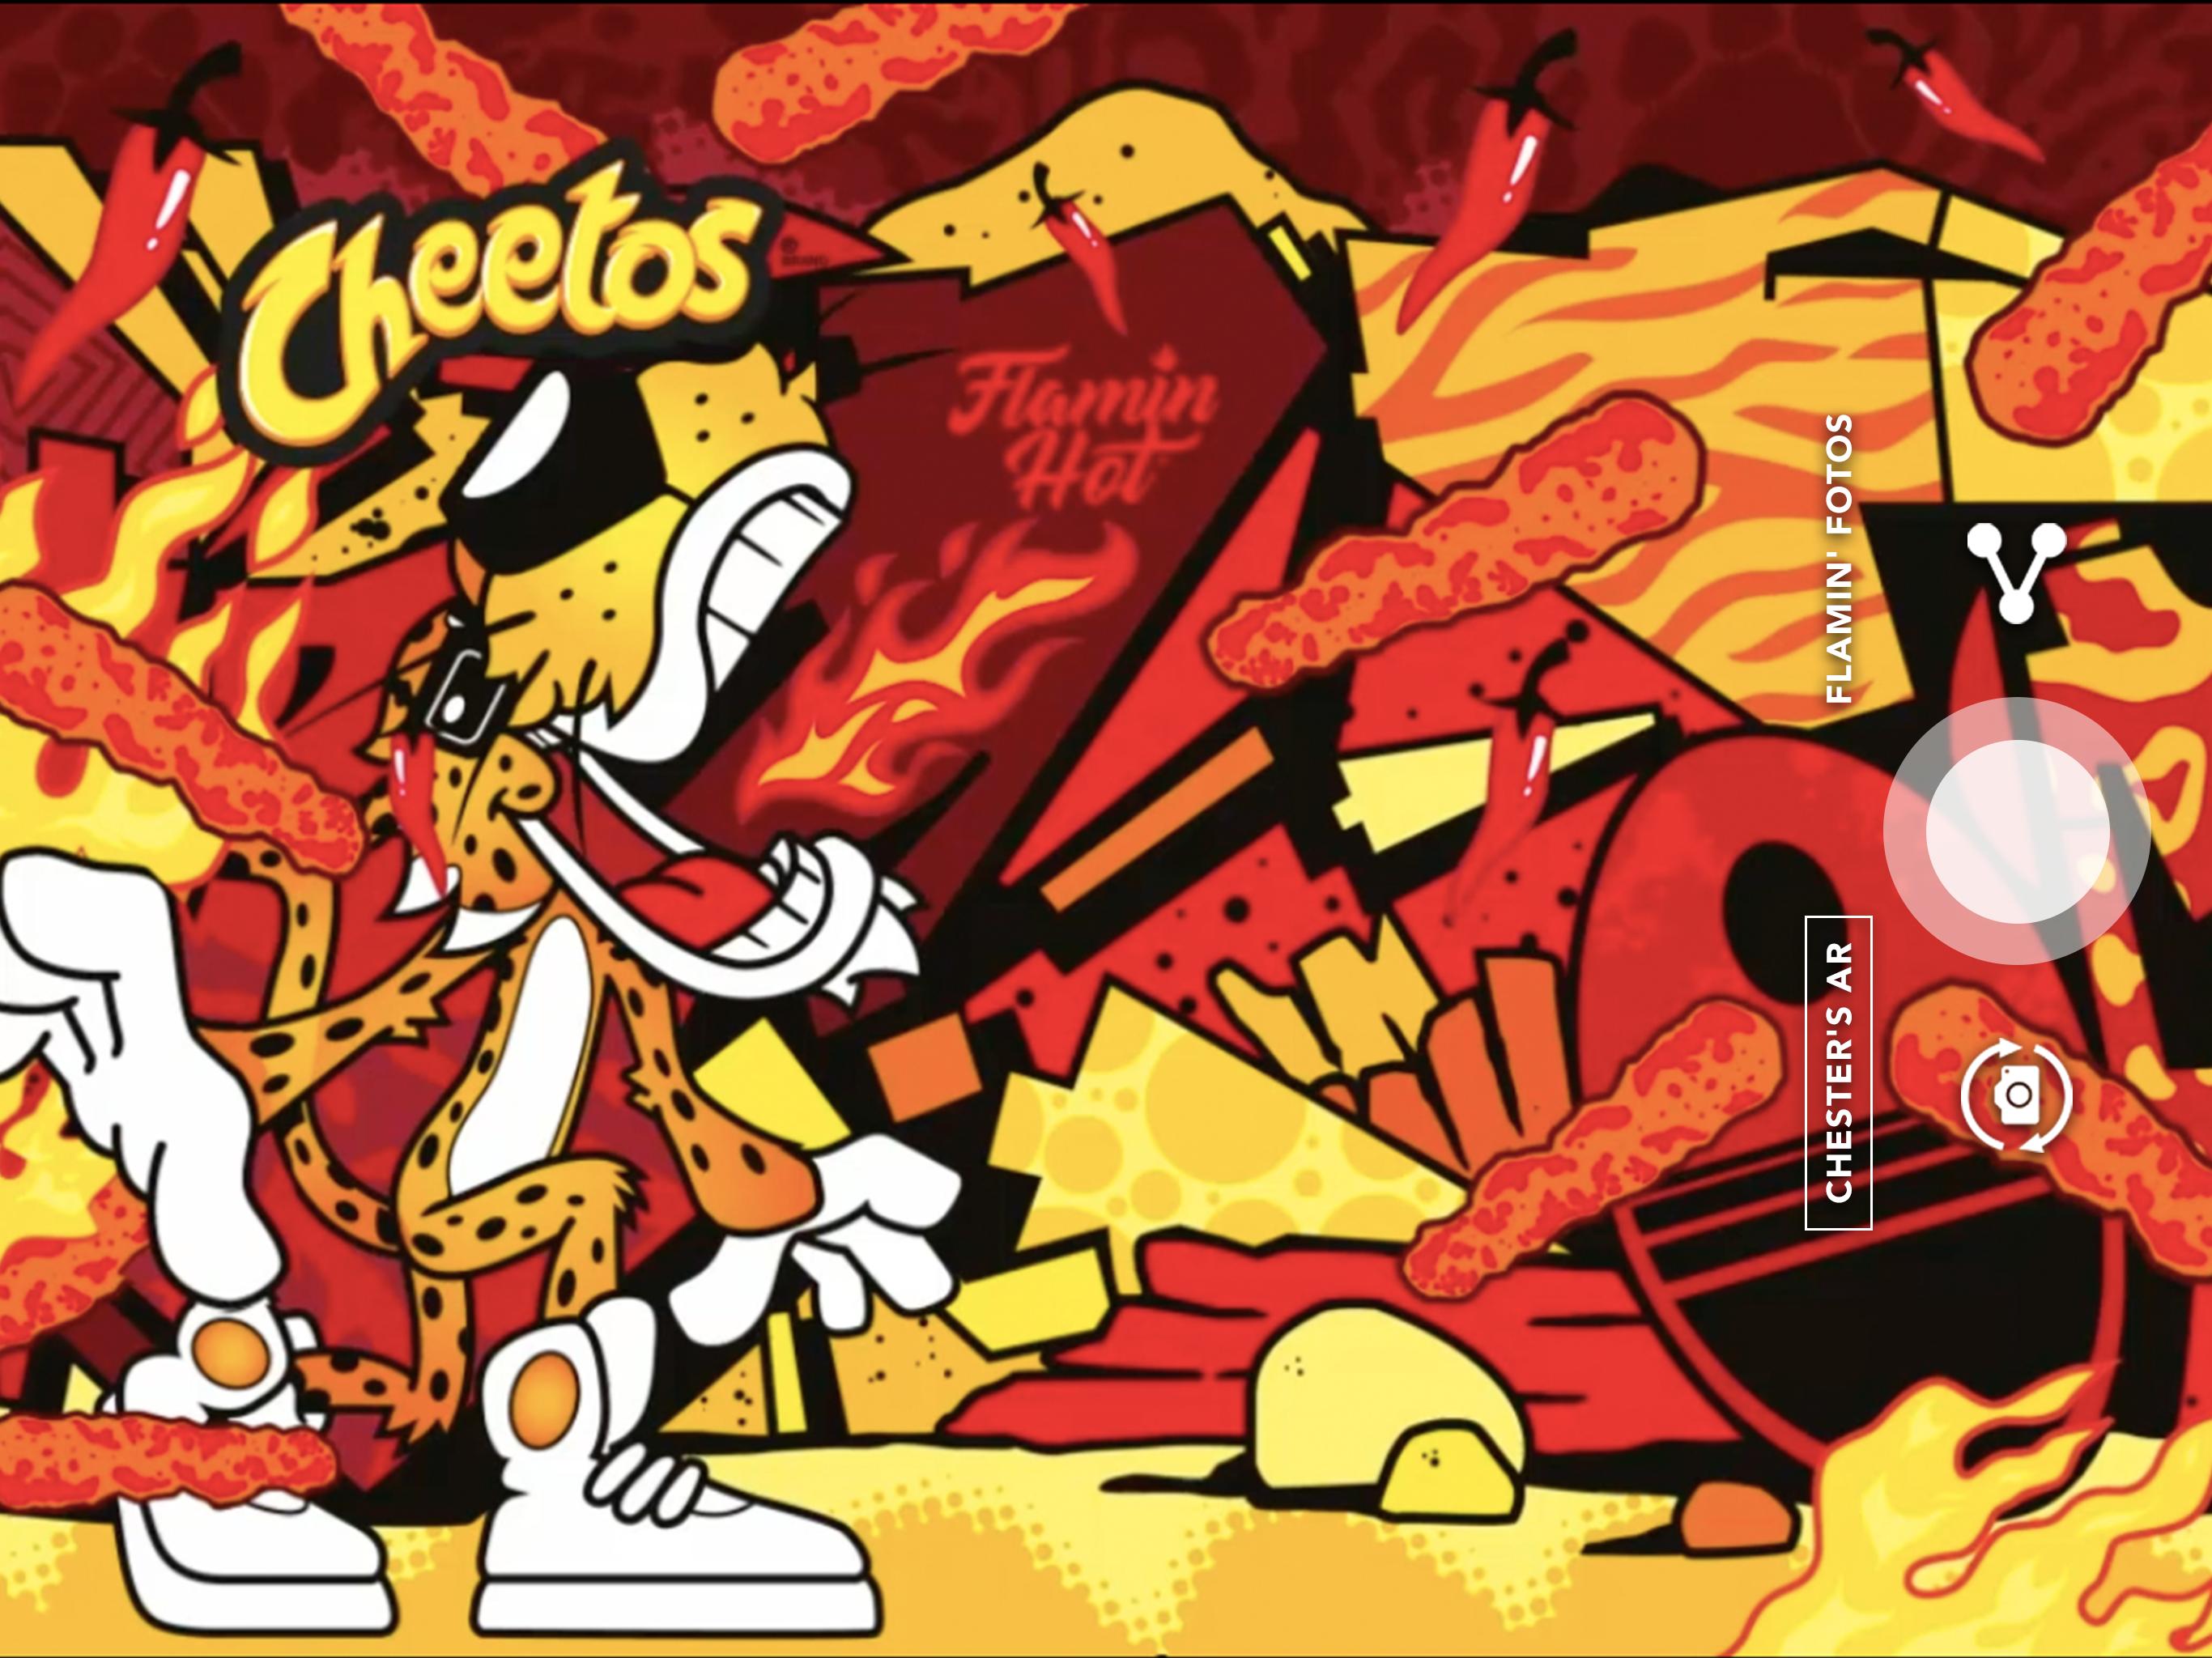 Cheetos Flamin' Hot Spot syot layar 6.